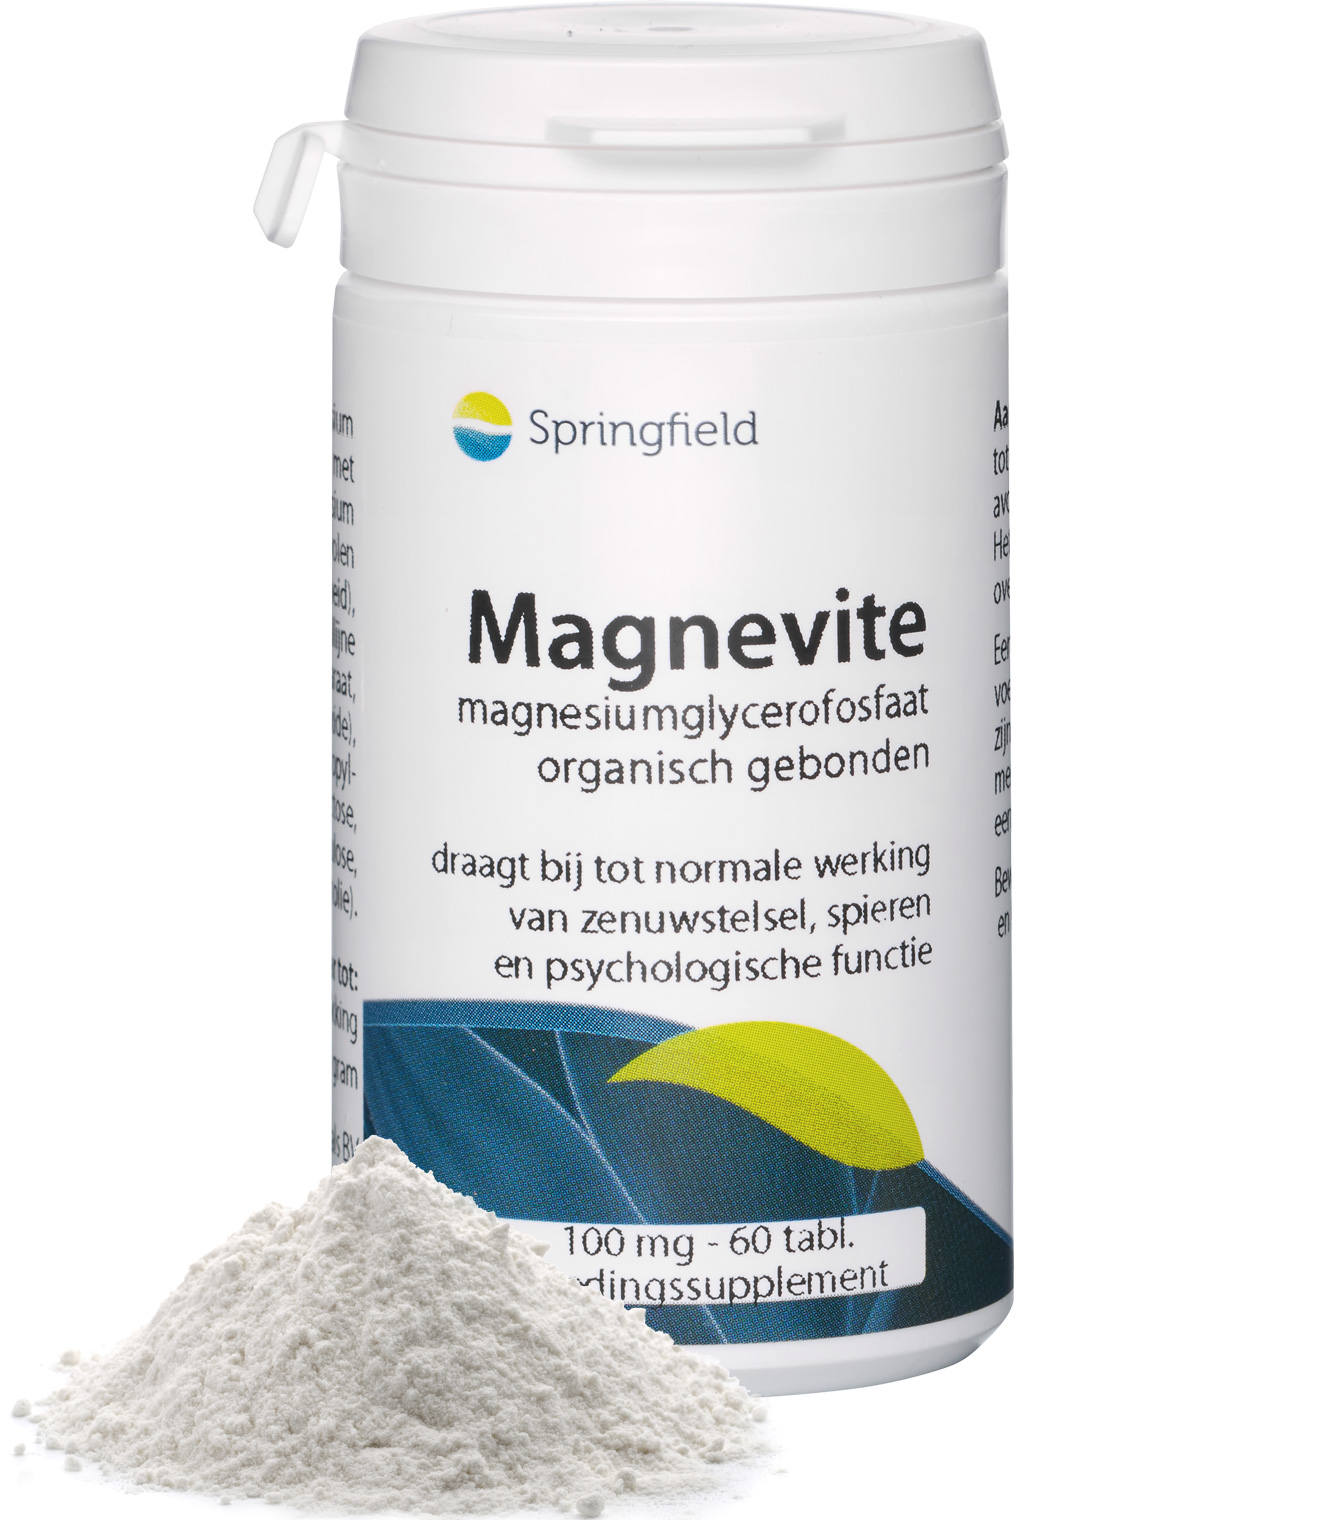 Magnevite magnesiumglycerofosfaat - organisch gebonden